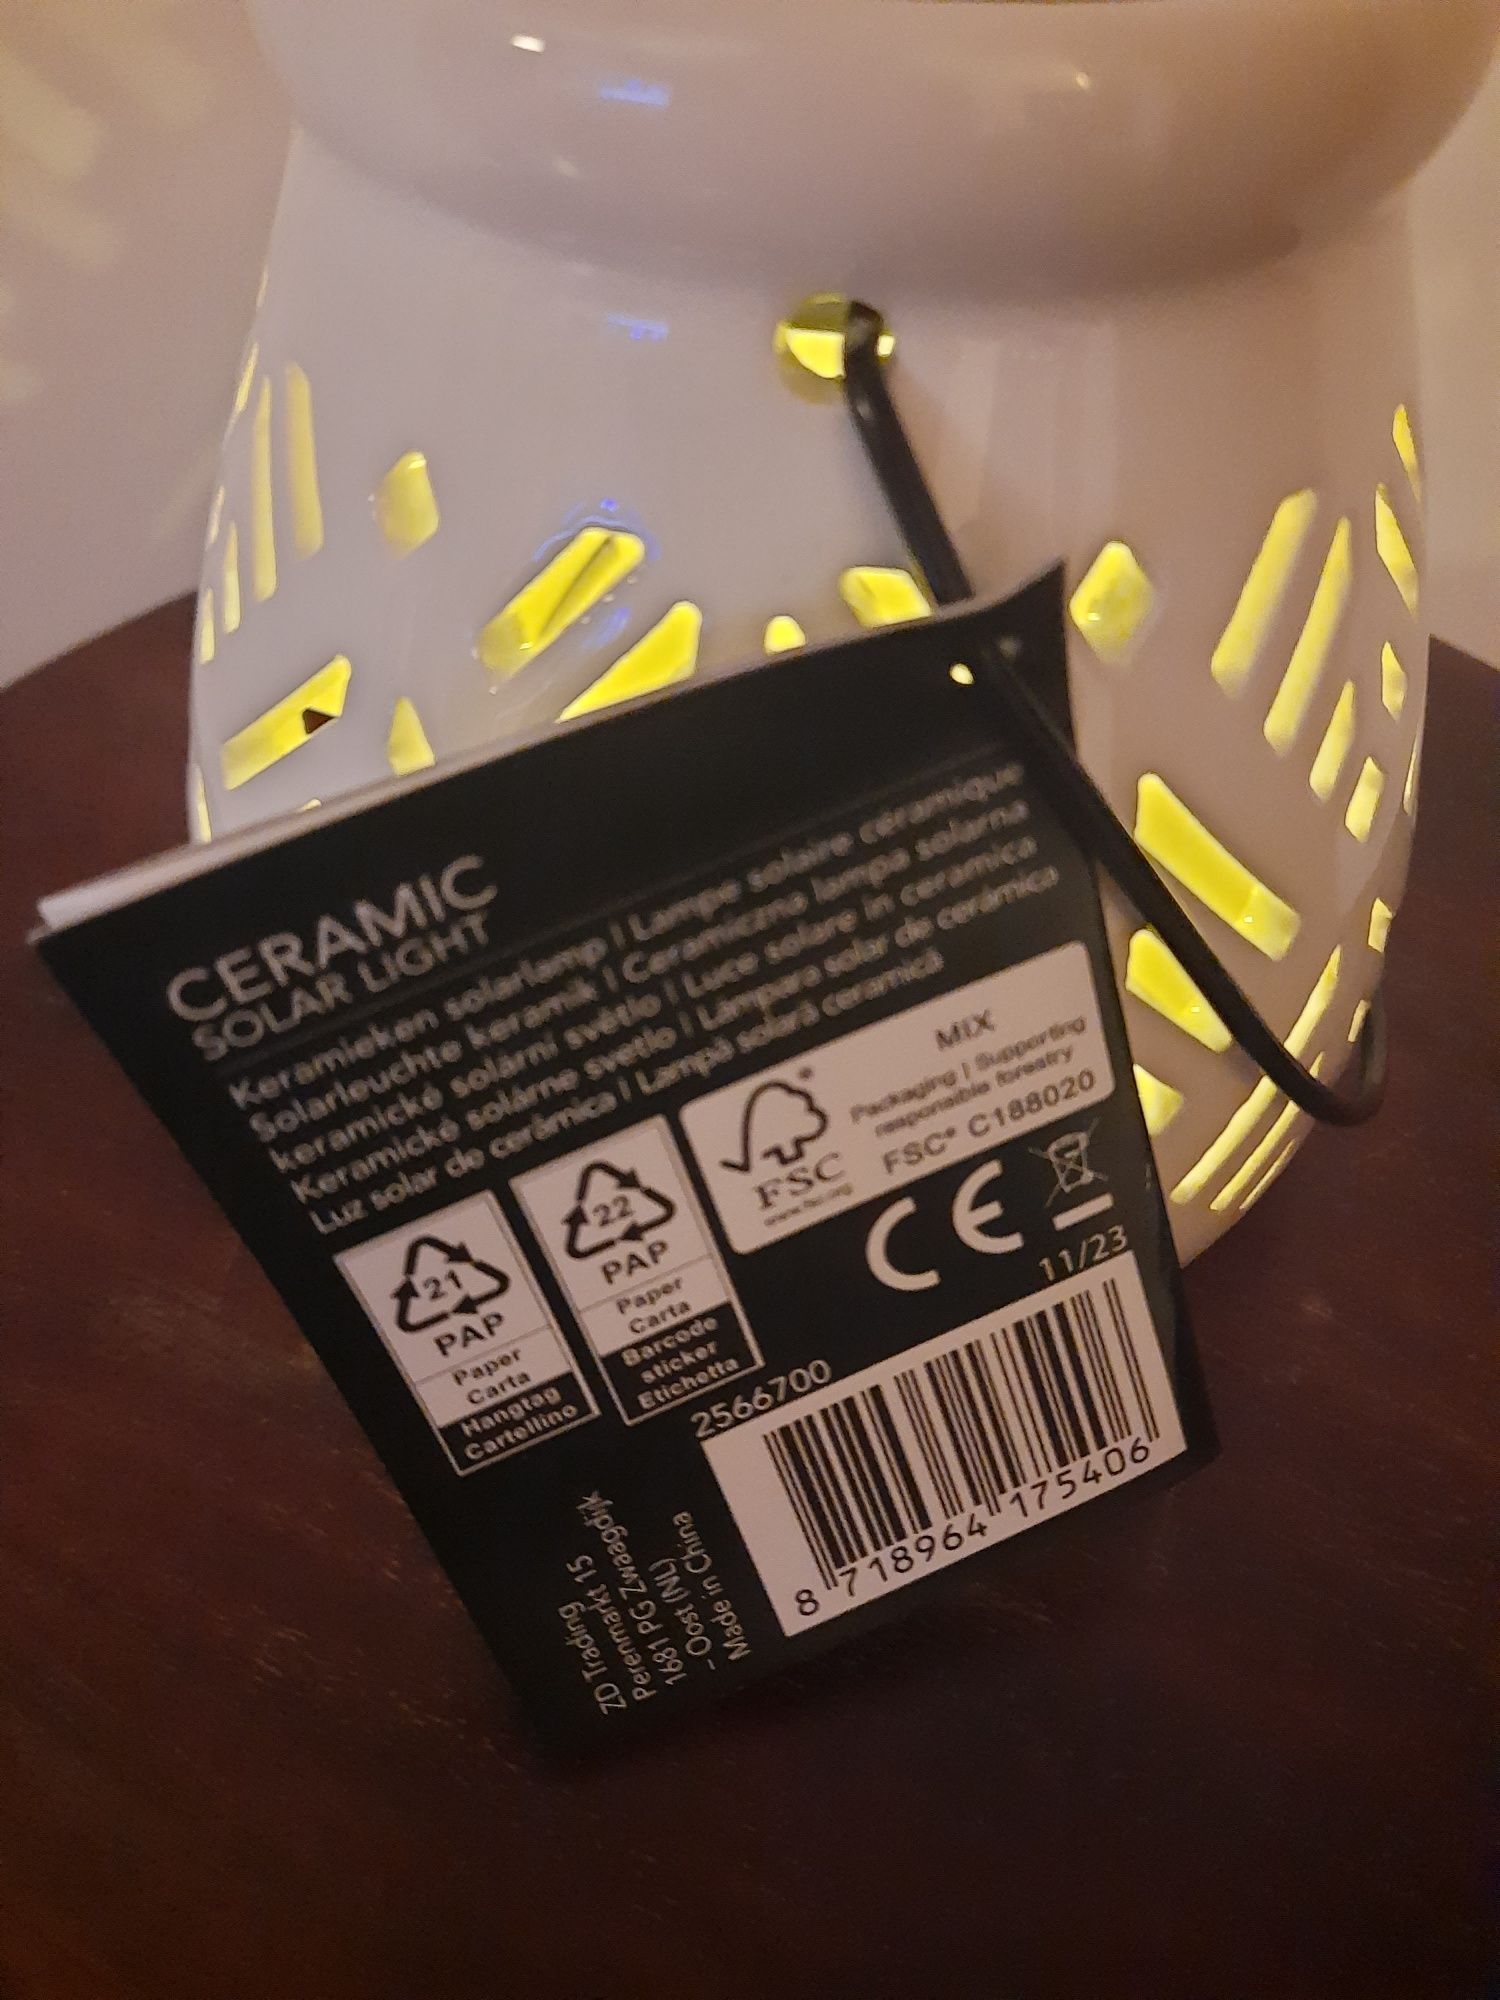 Lampion led solarny ceramiczny latarenka świeczka różne rodzaje światł